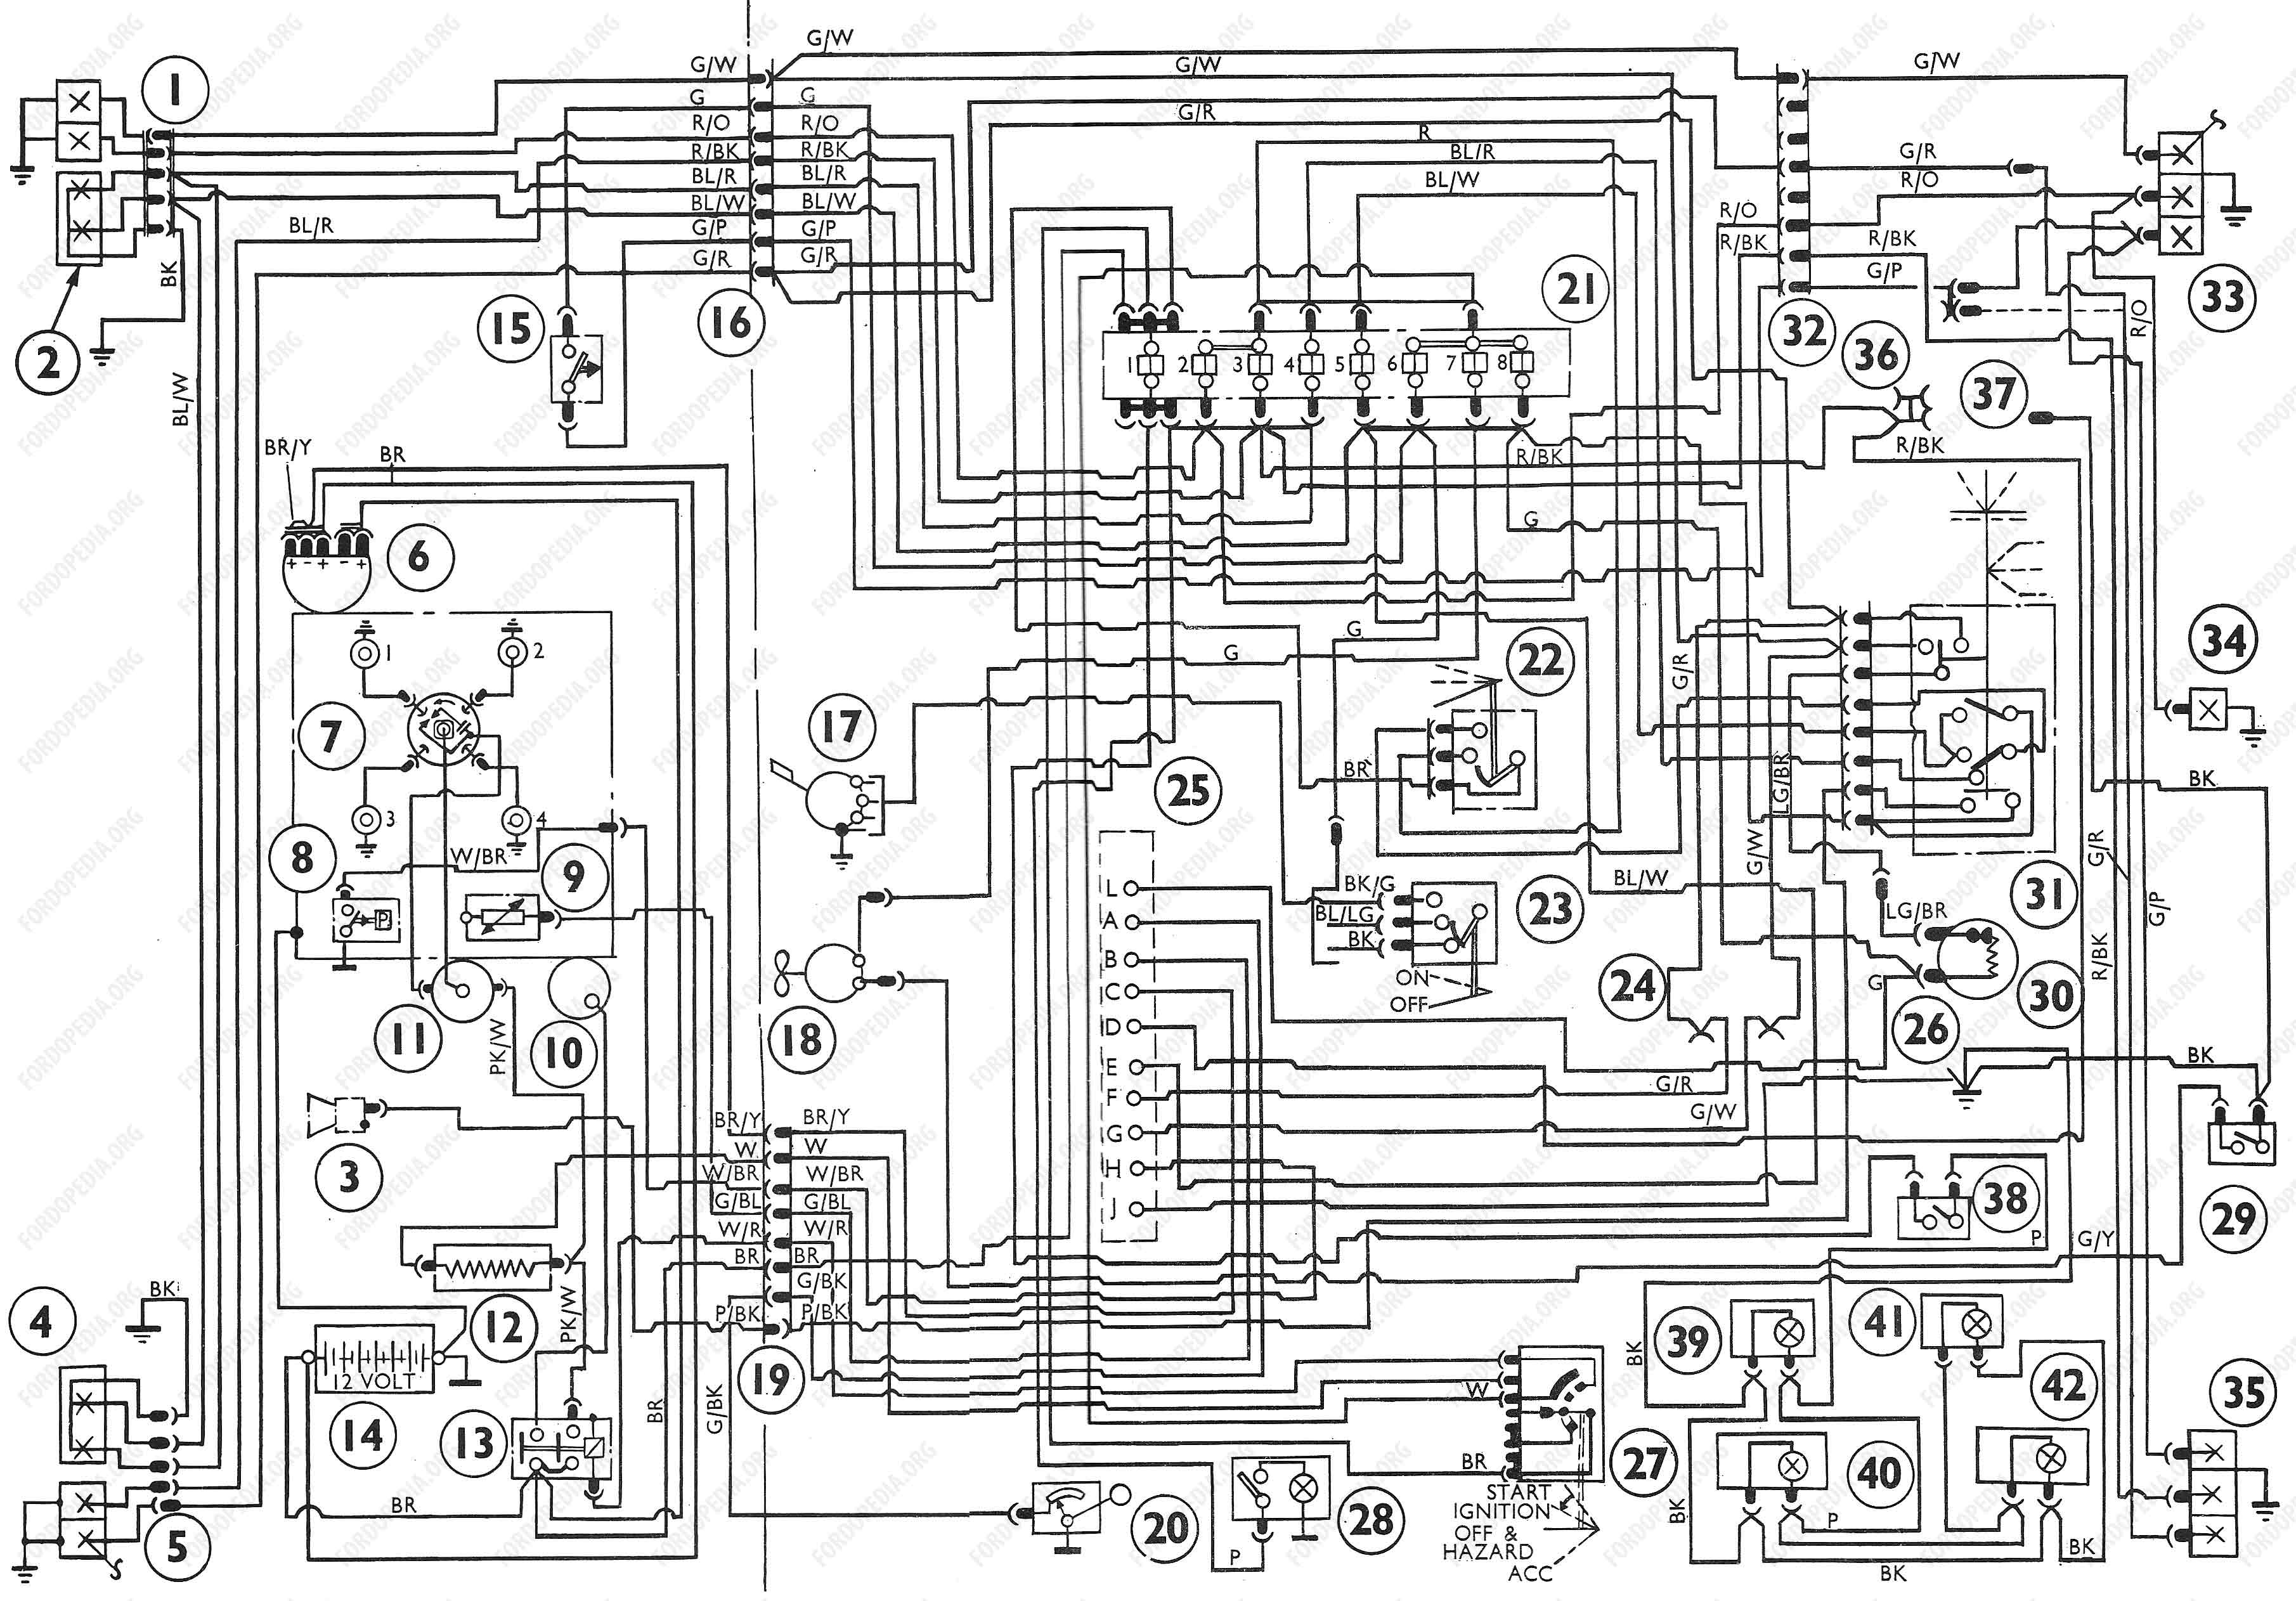 Ford transit van wiring diagram #3